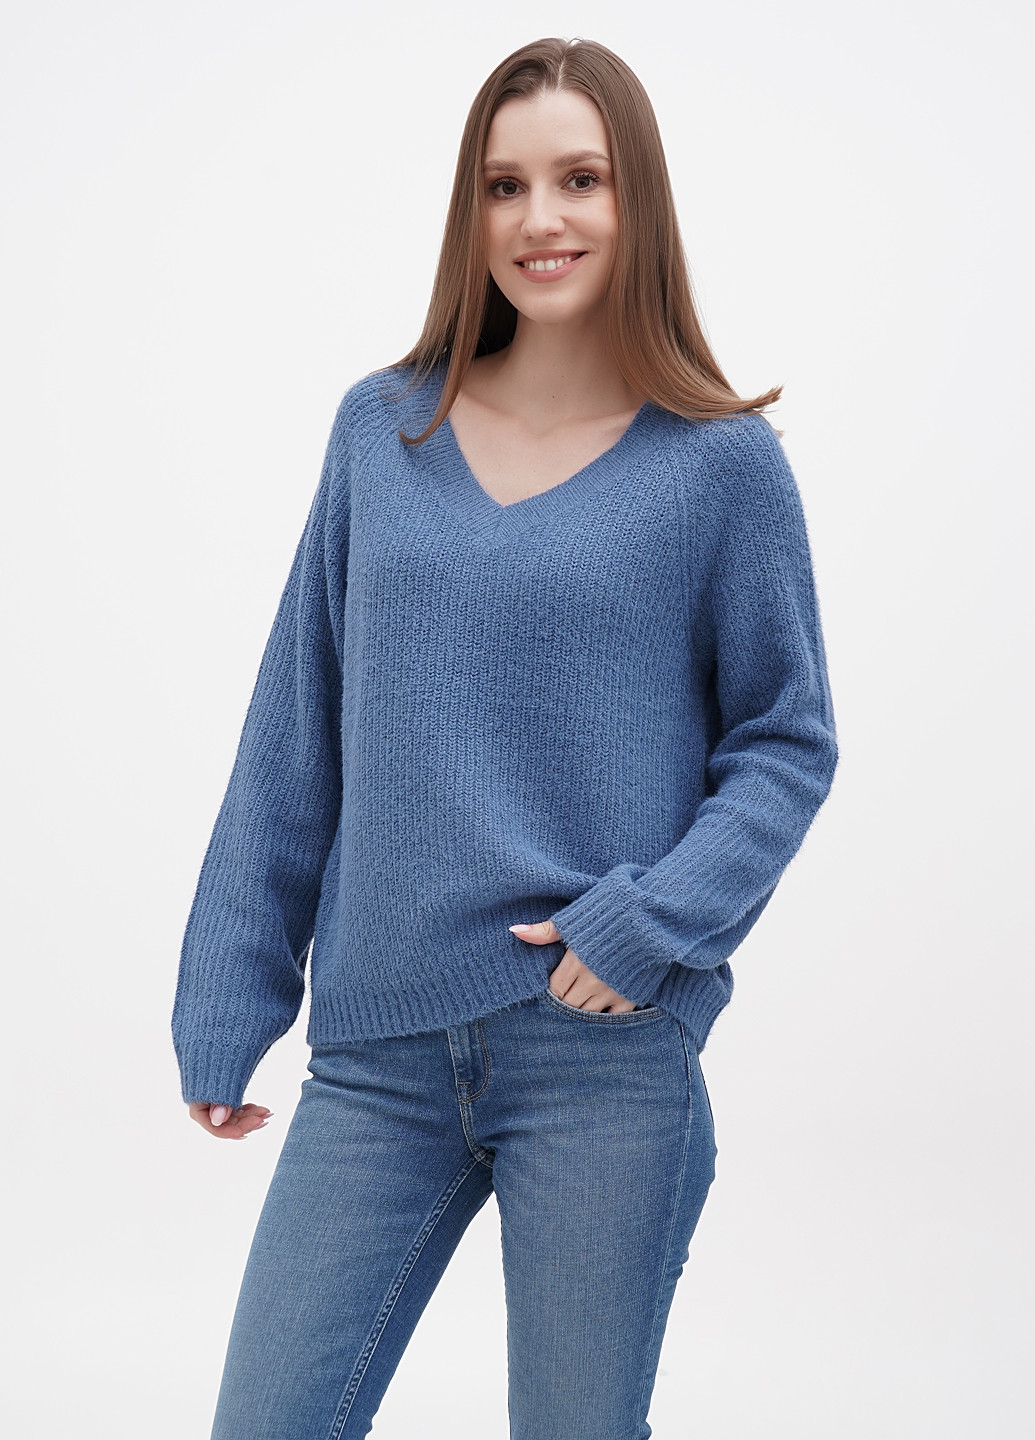 Синий зимний пуловер пуловер Only